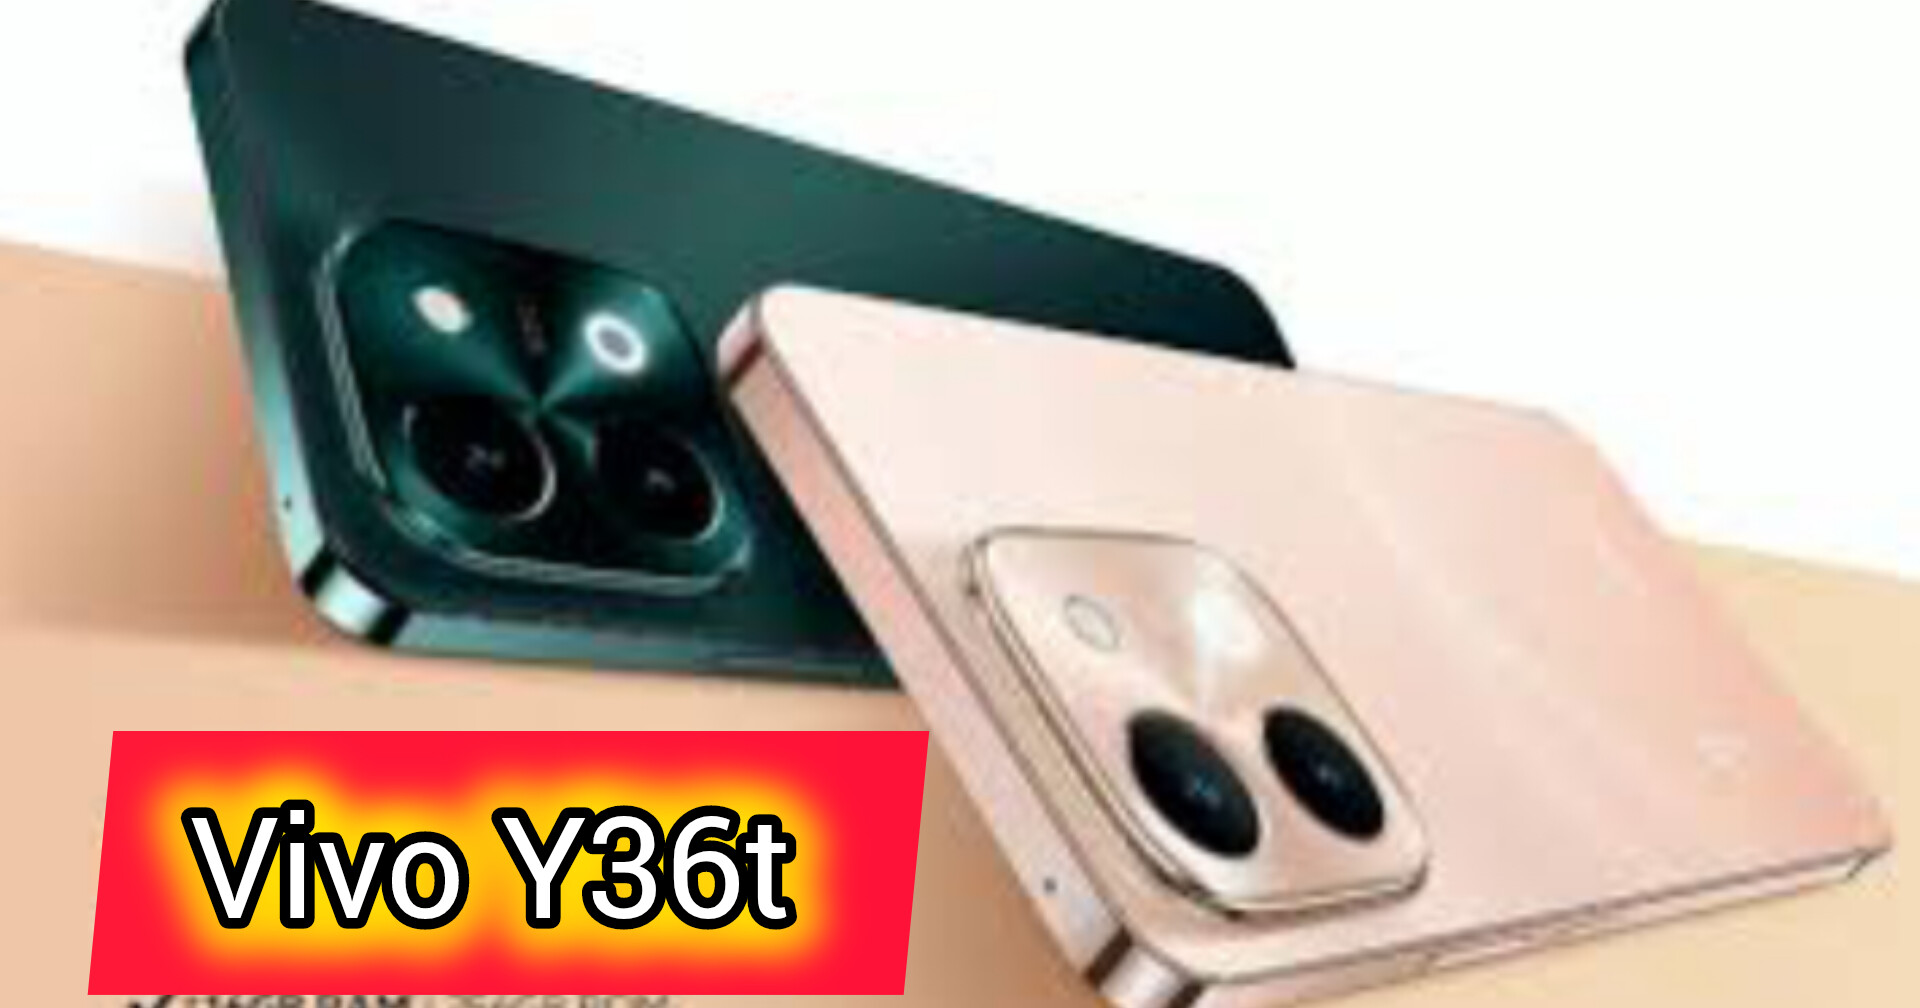 Vivo Y36t Resmi Dirilis, Handphone Merk China Murah Hanya Rp 1 jutaan saja